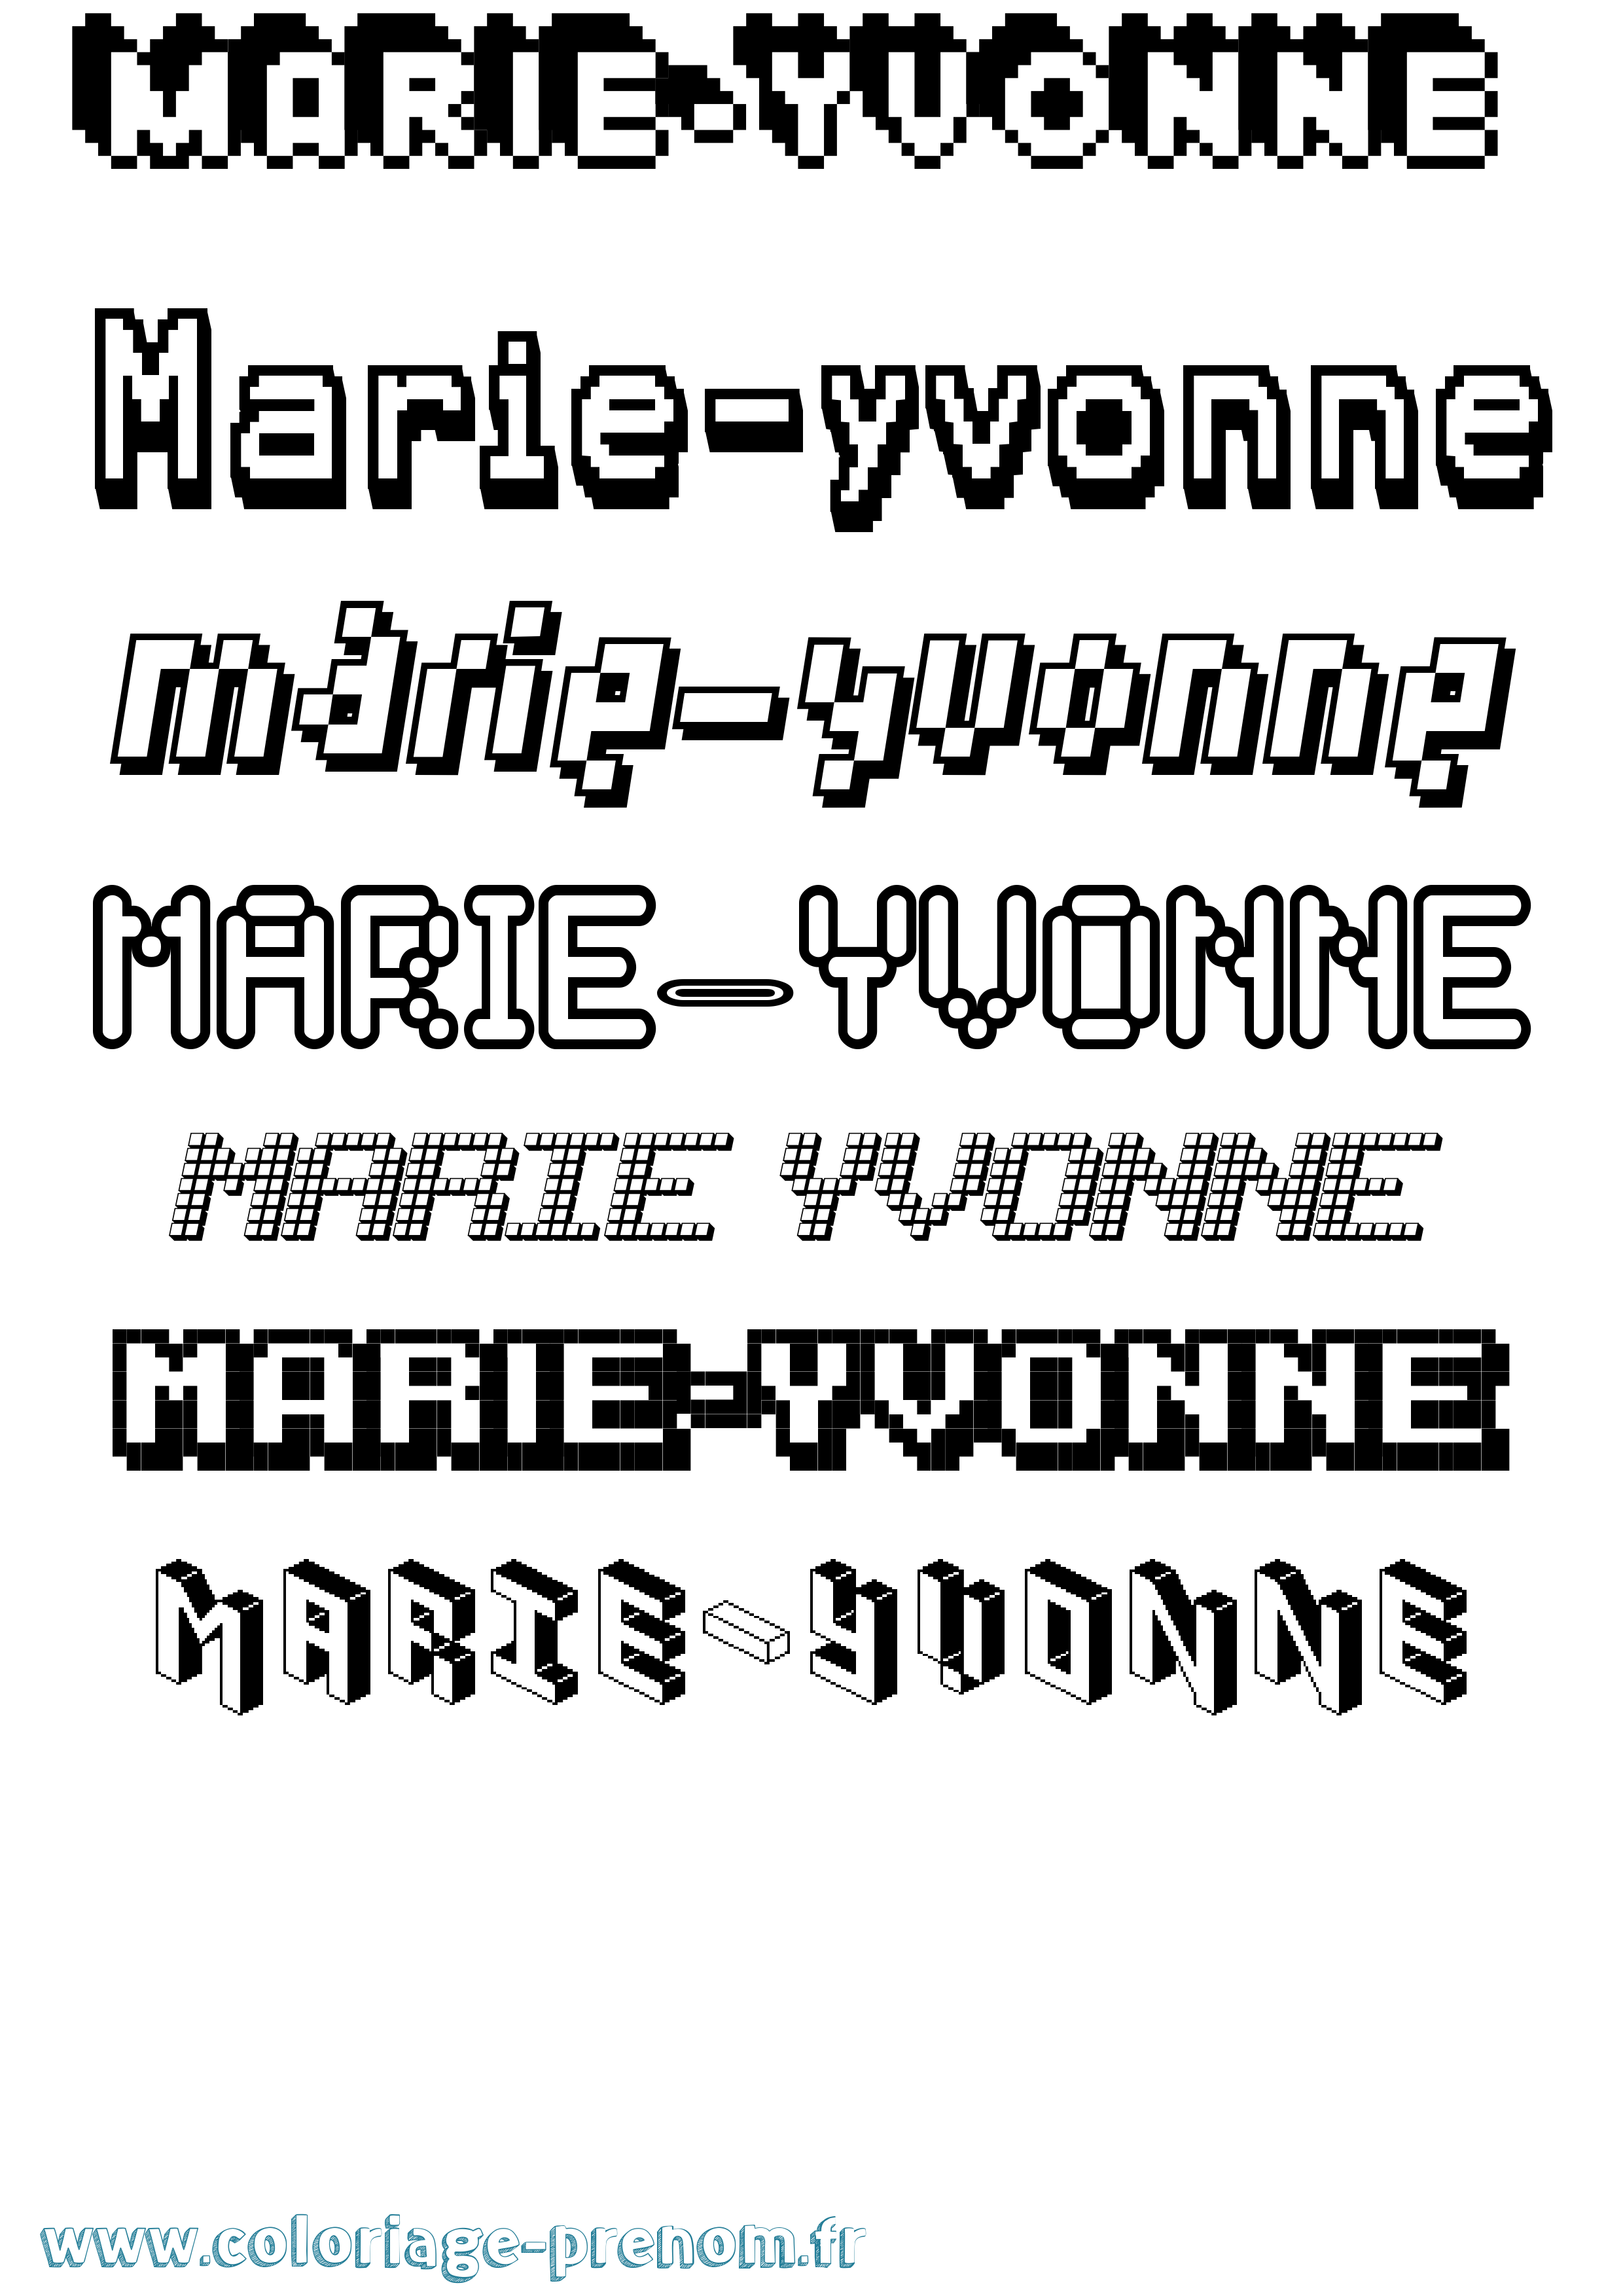 Coloriage prénom Marie-Yvonne Pixel